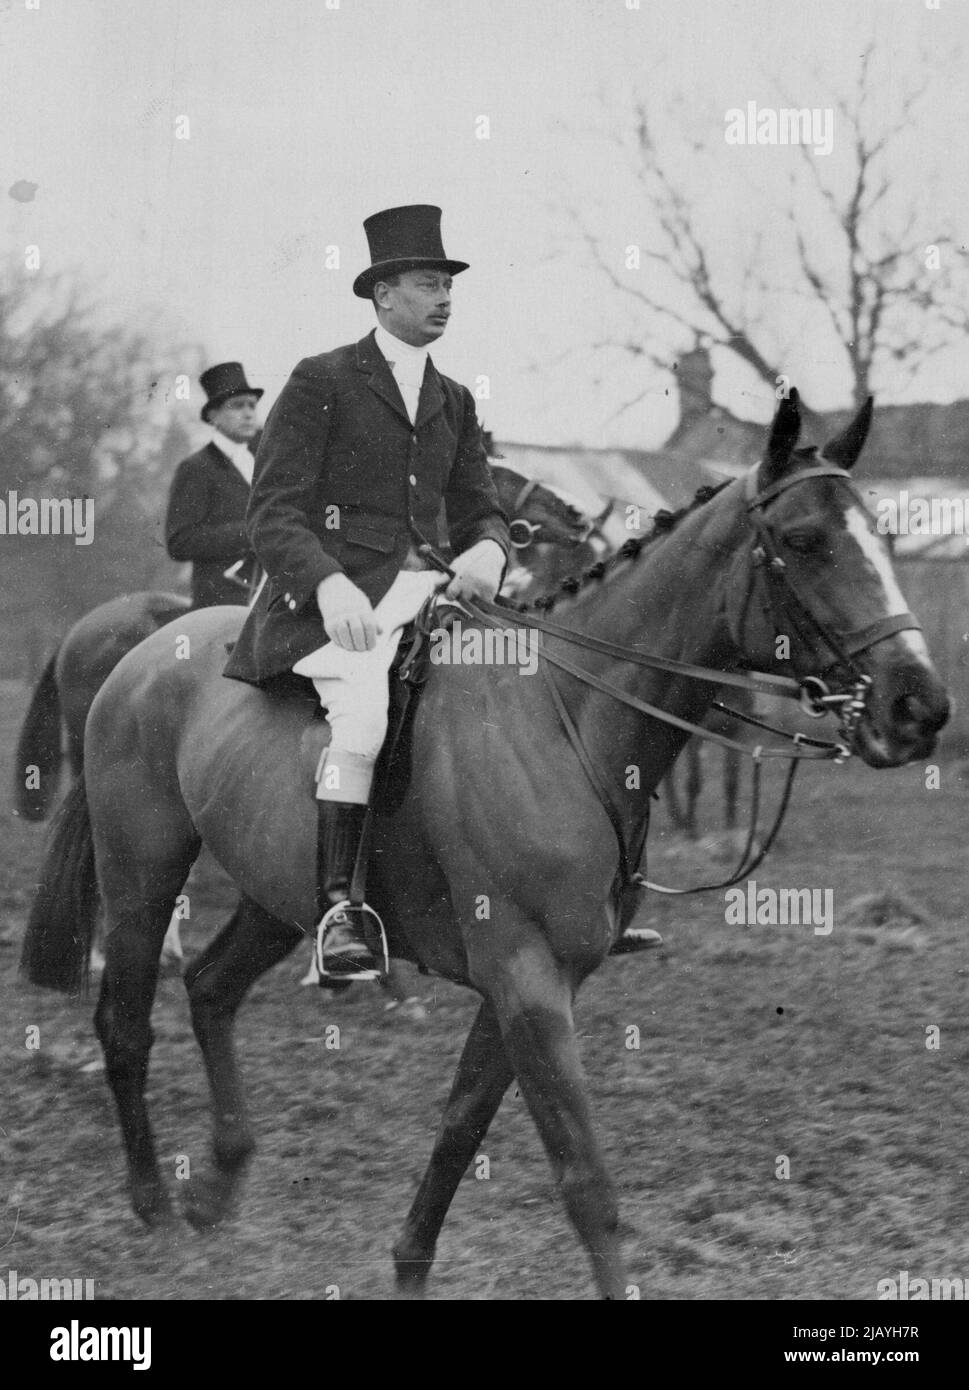 Il Duca di Gloucester con il Quorn -- il Duca di Gloucester che arriva per l'incontro. H.R.H. il duca di Gloucester era tra coloro che frequentavano l'incontro dei Quorn Hounds a Thorpe Satchville oggi gennaio 22. Giugno 5, 1934. (Foto di stampa associata). Foto Stock